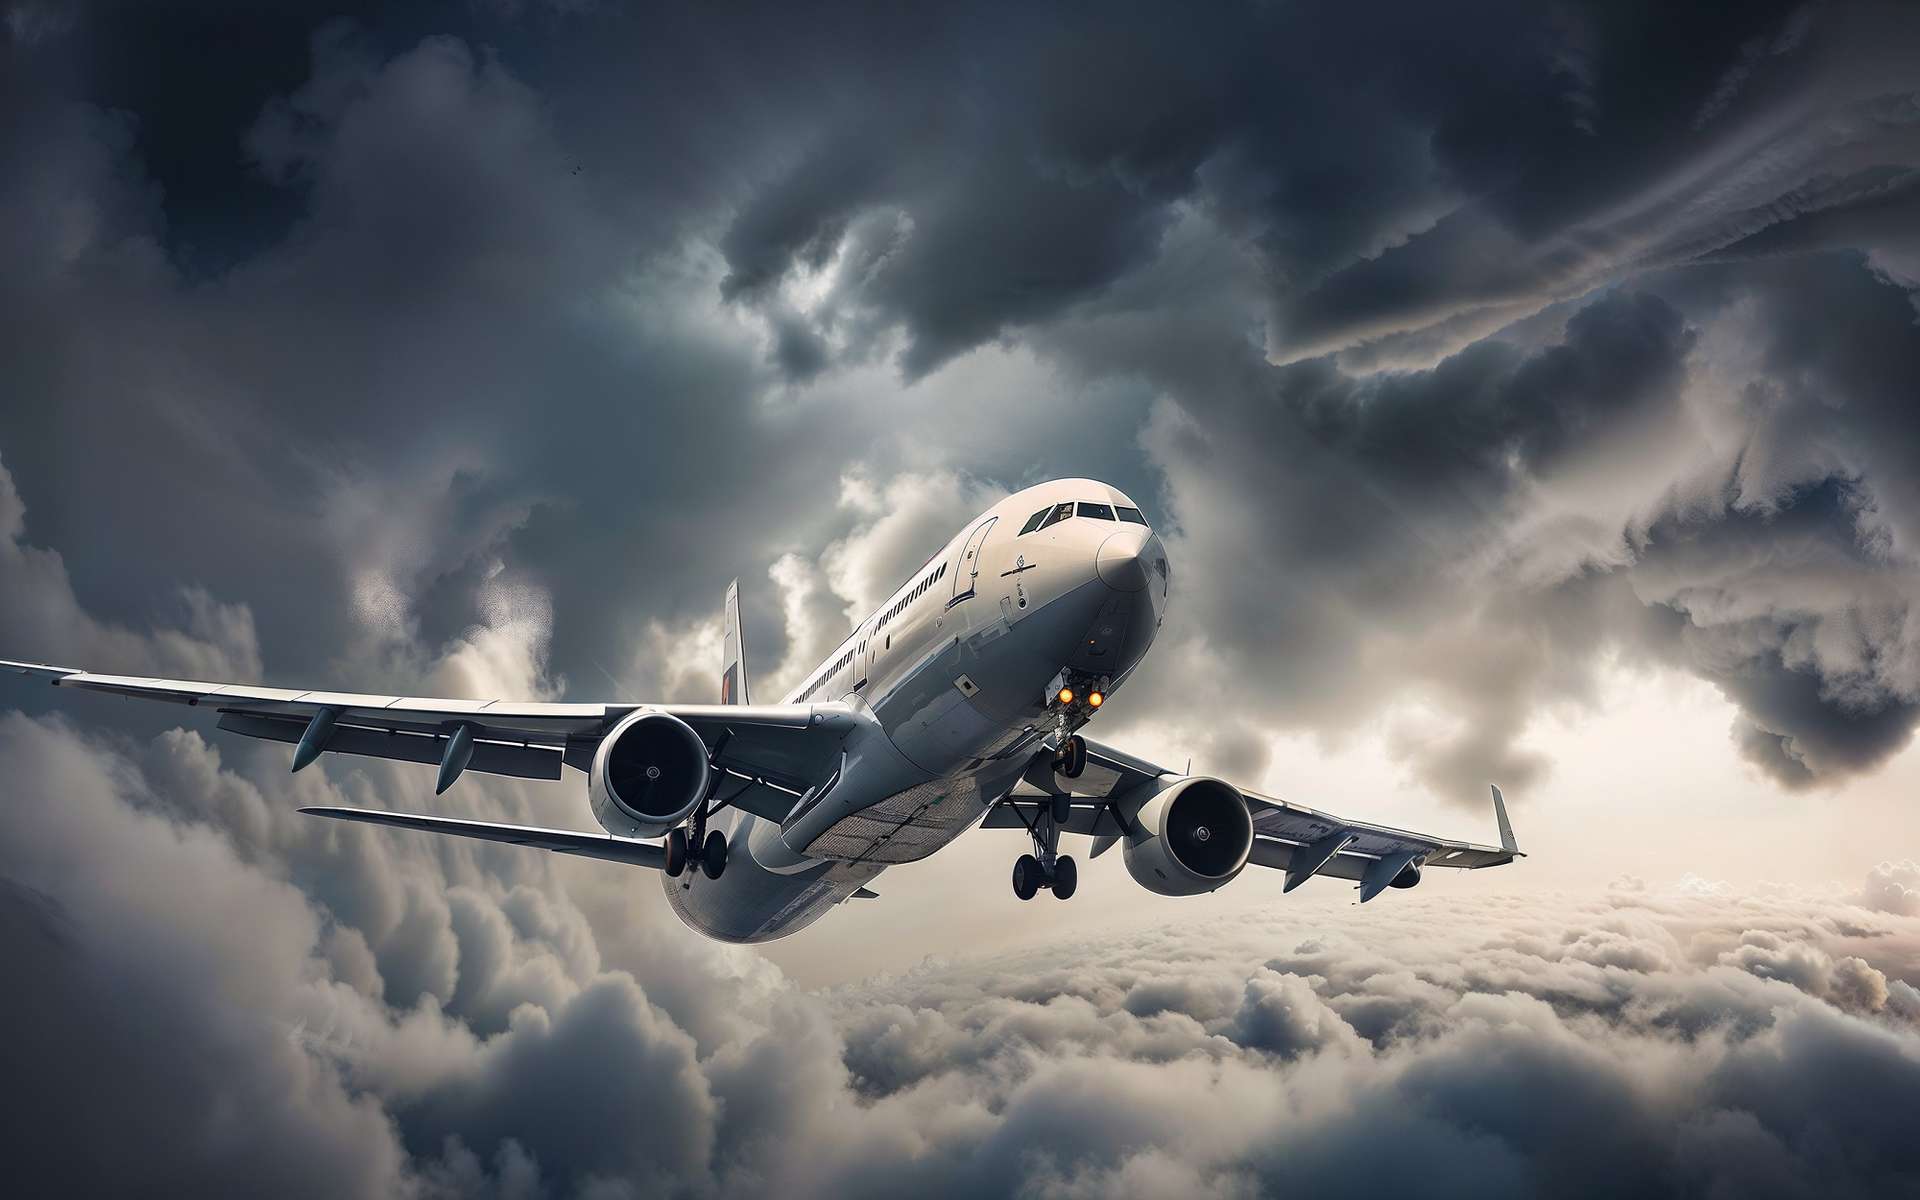 Les turbulences en avion seront plus fréquentes à cause du réchauffement climatique